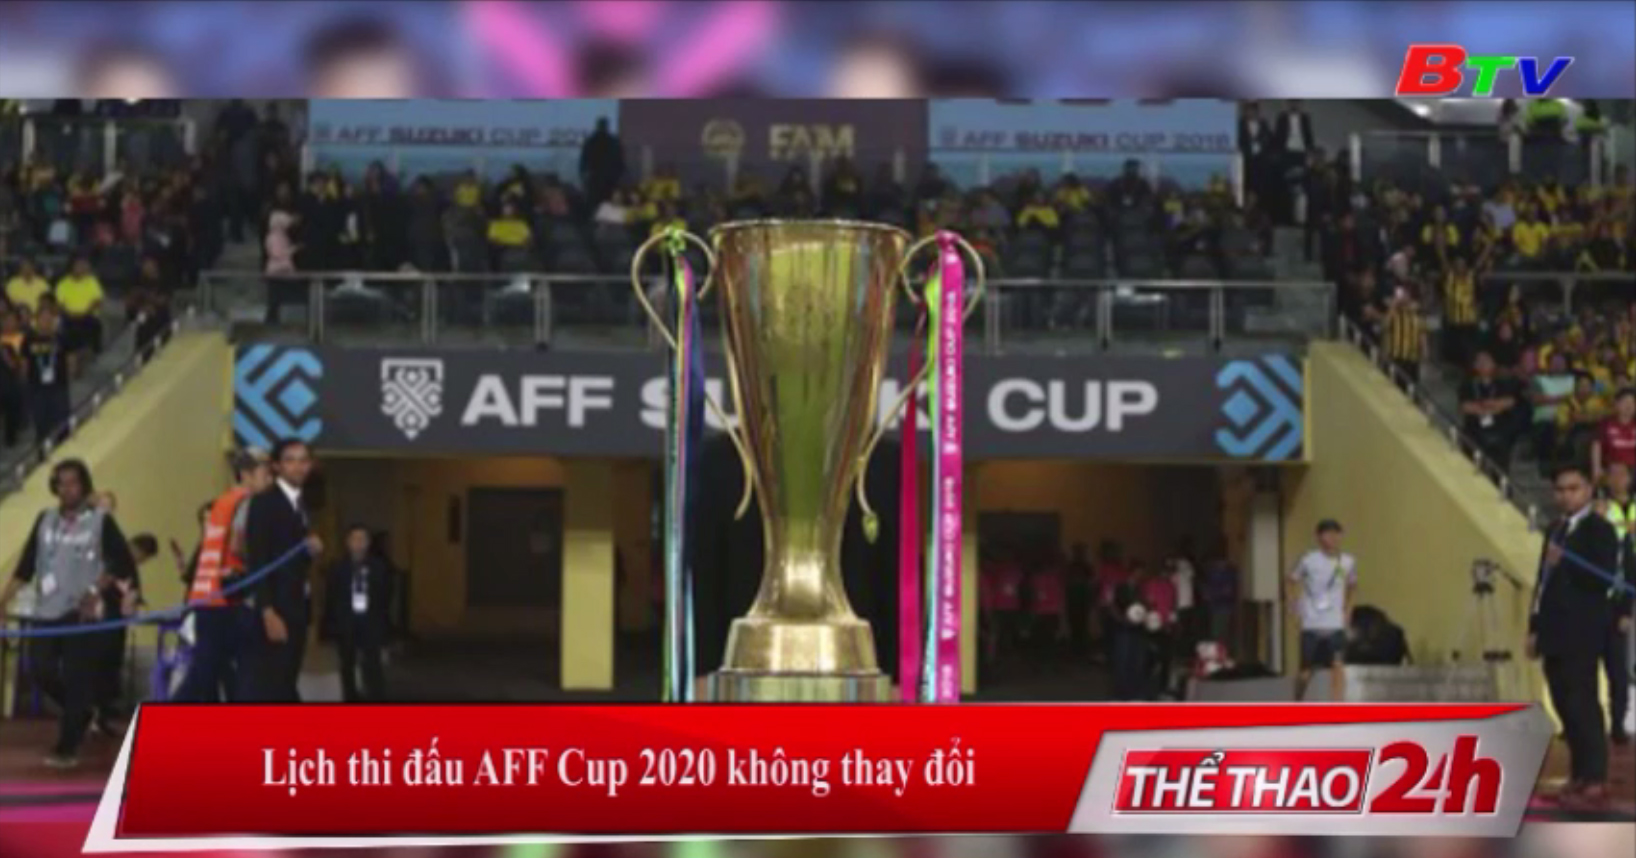 Lịch thi đấu AFF Cup 2020 không thay đổi